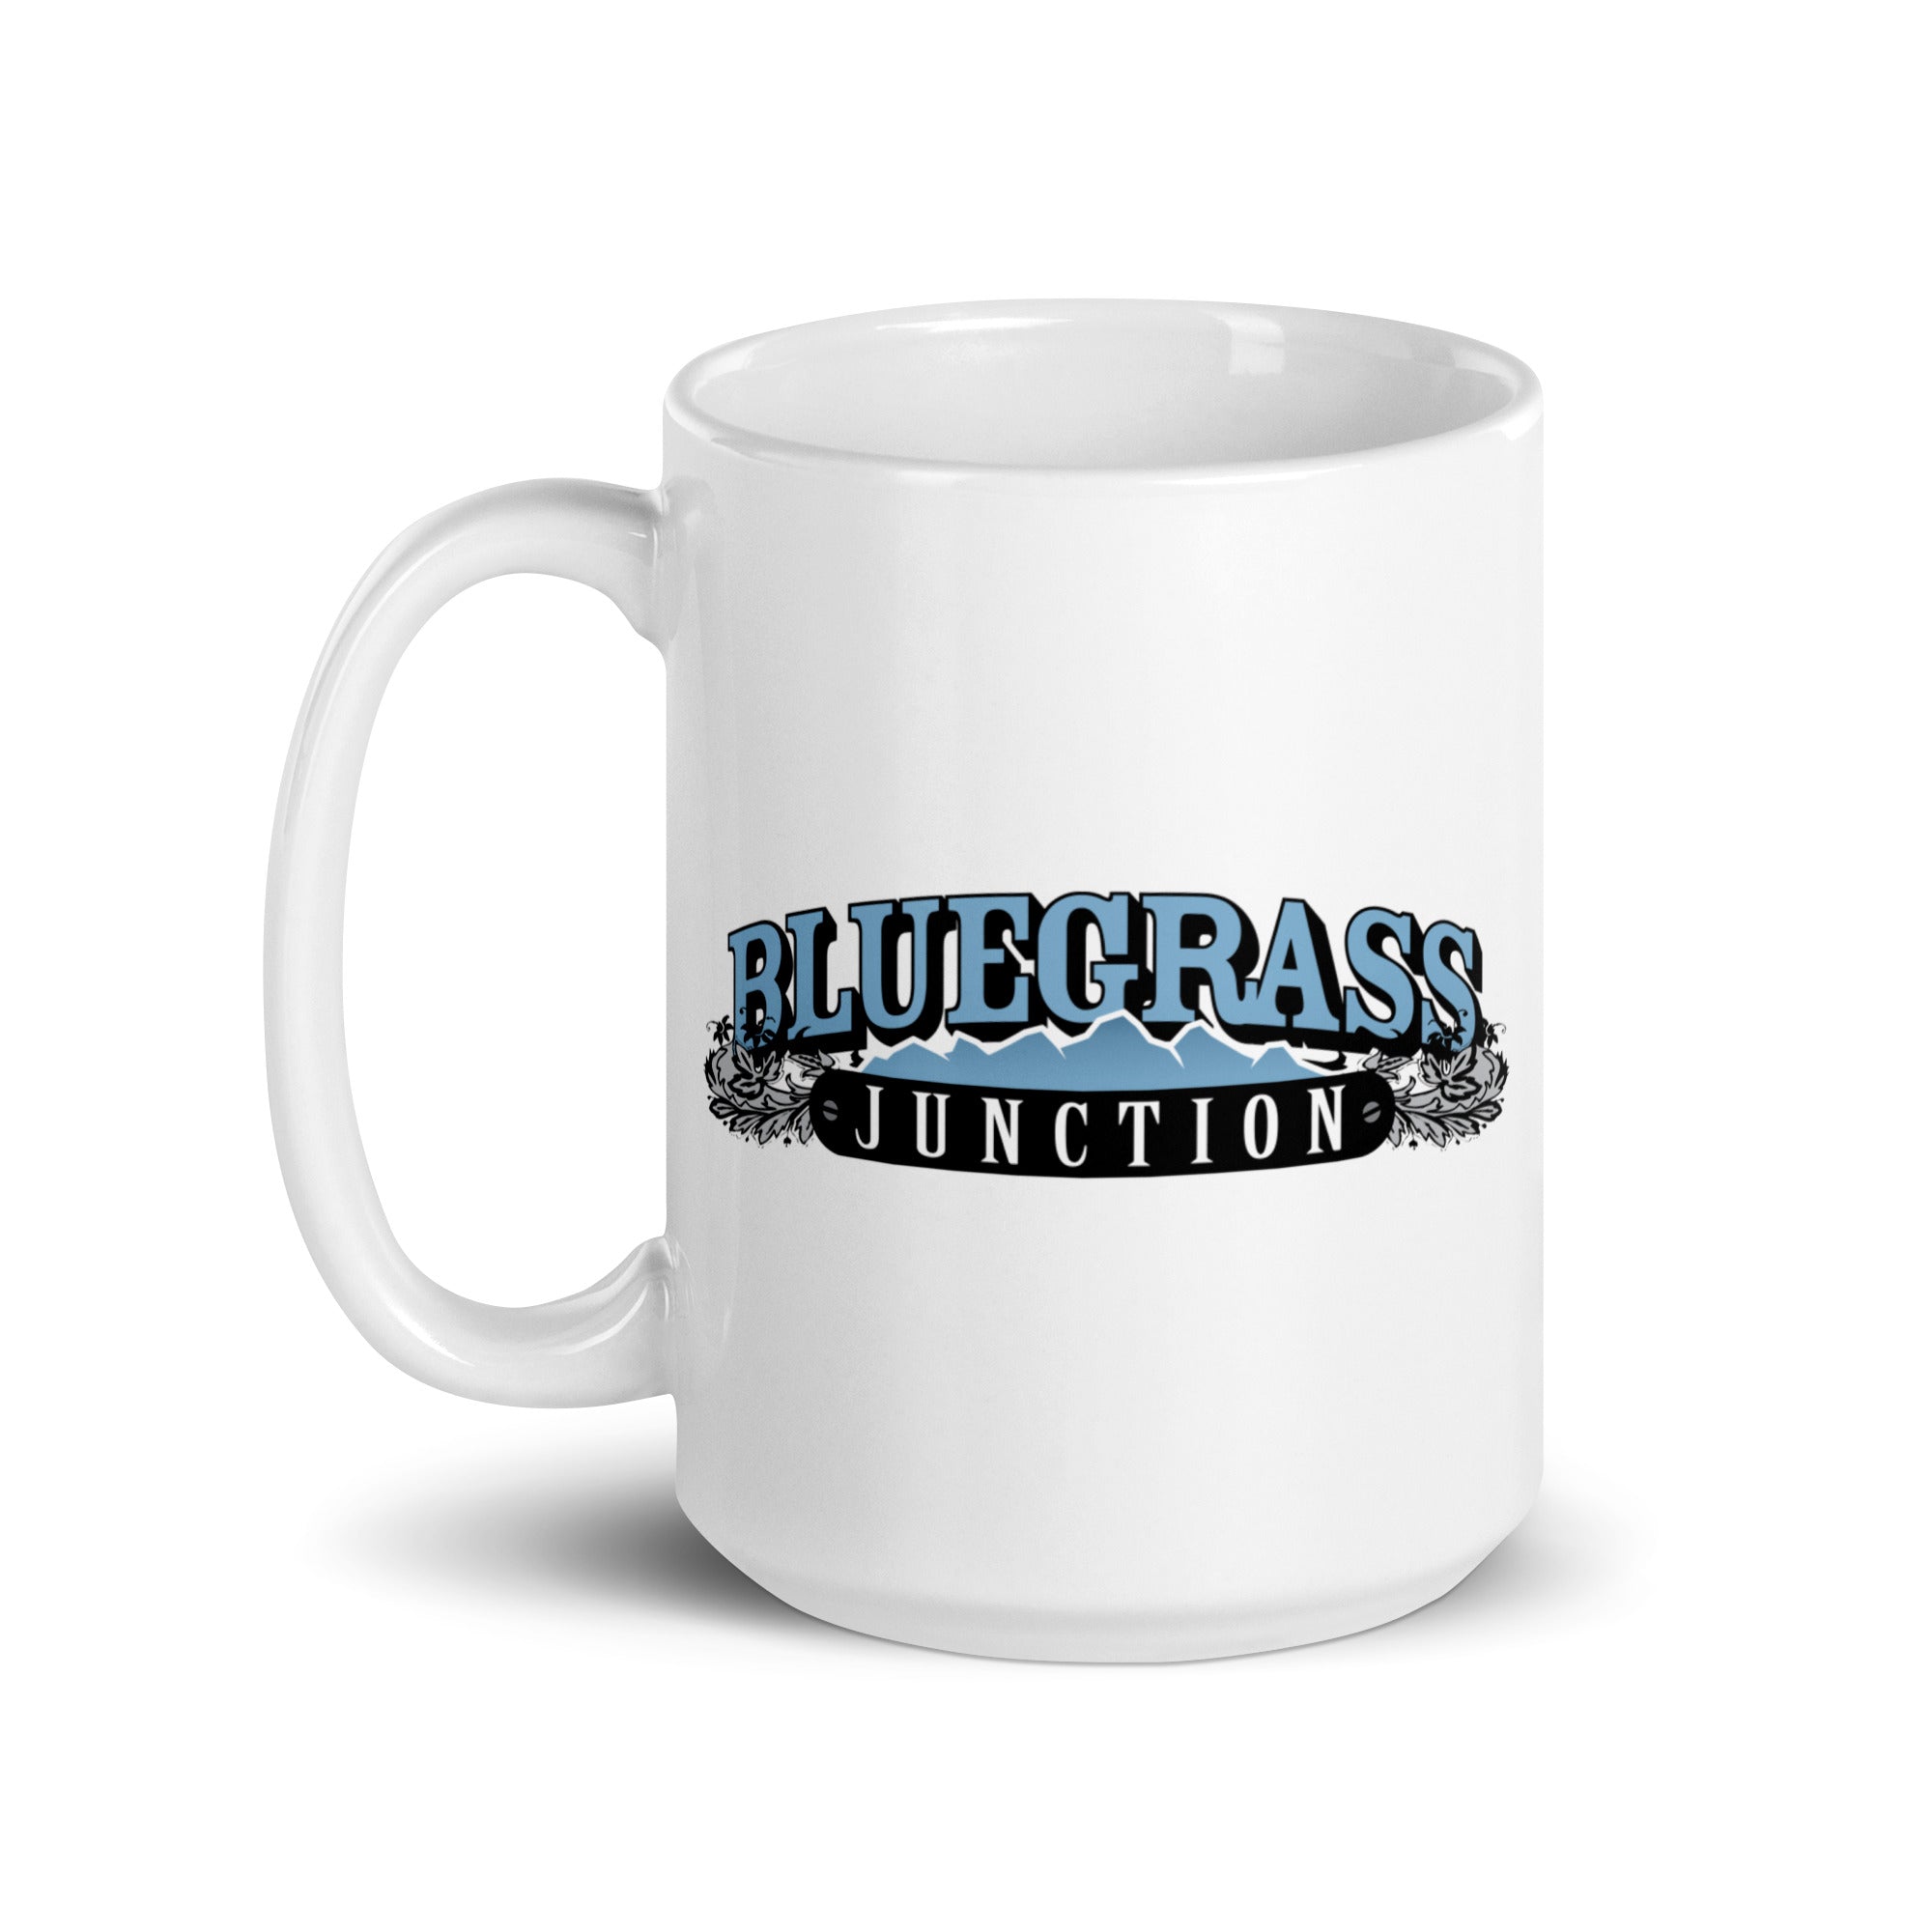 Bluegrass Junction: Mug